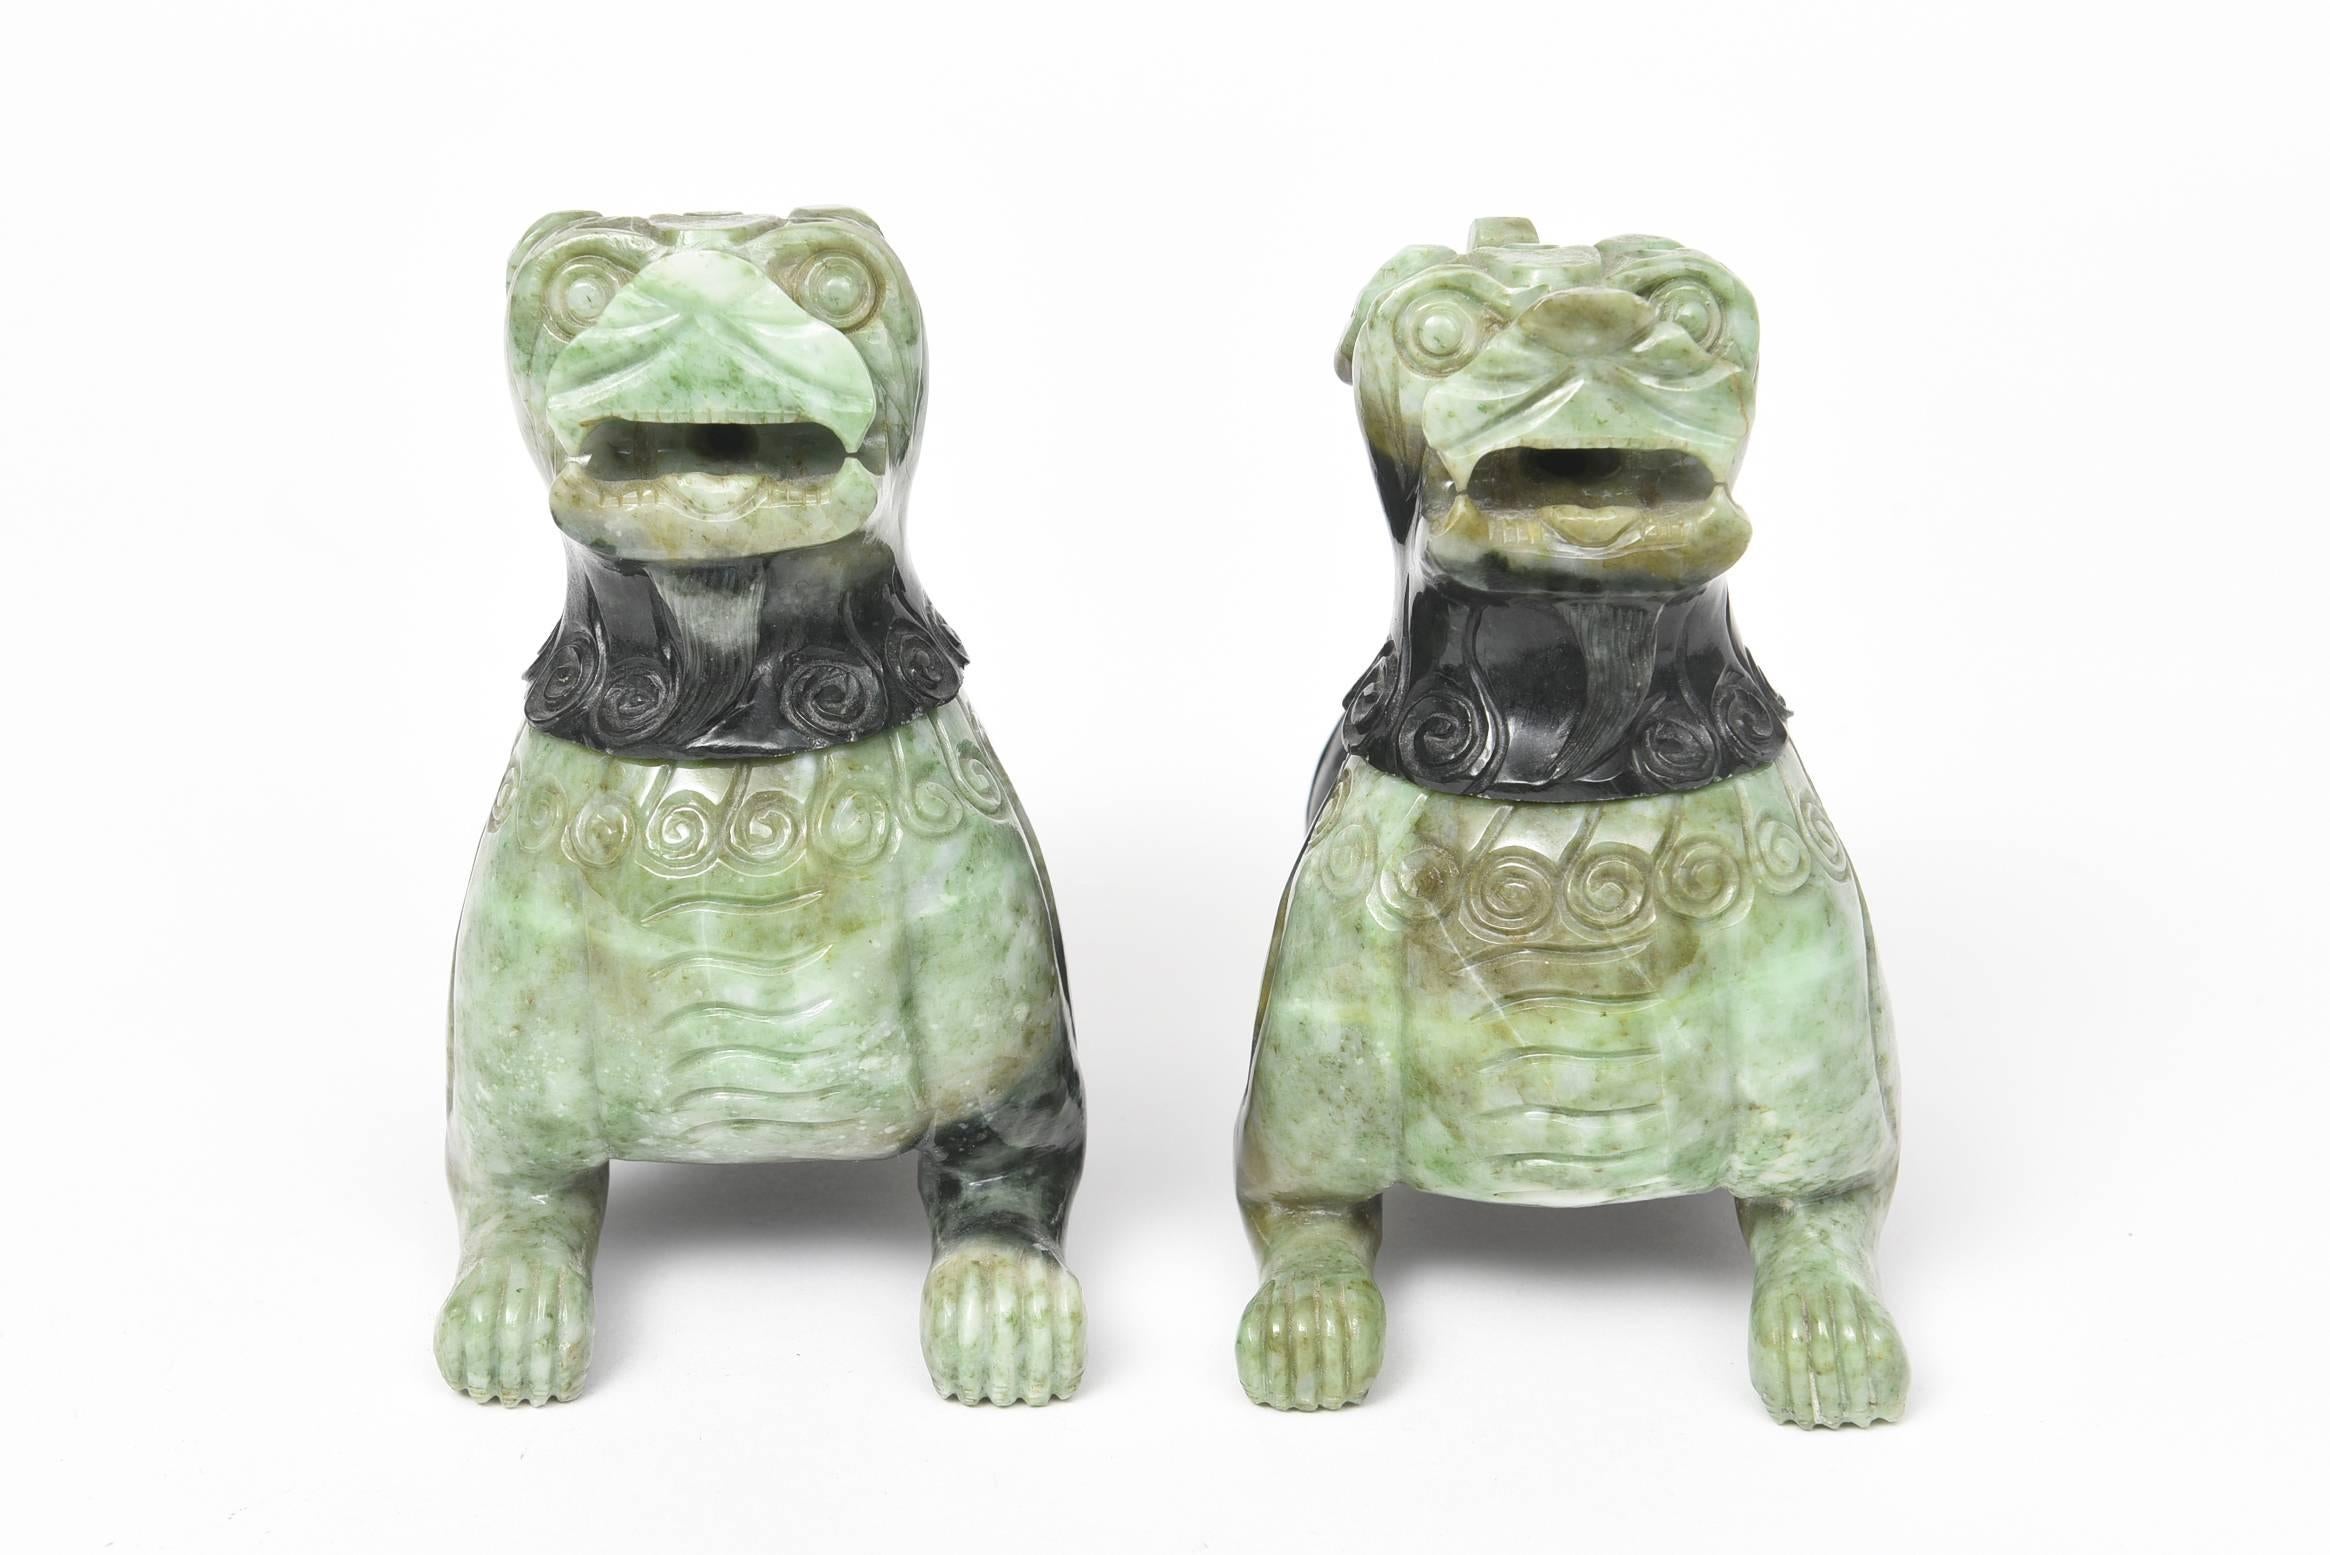 Pierre dure verte bicolore sculptée pour représenter une paire de chiens et de lions foo traditionnels chinois. Les têtes de ces impressionnantes créatures se détachent pour être utilisées comme brûleurs d'encens.